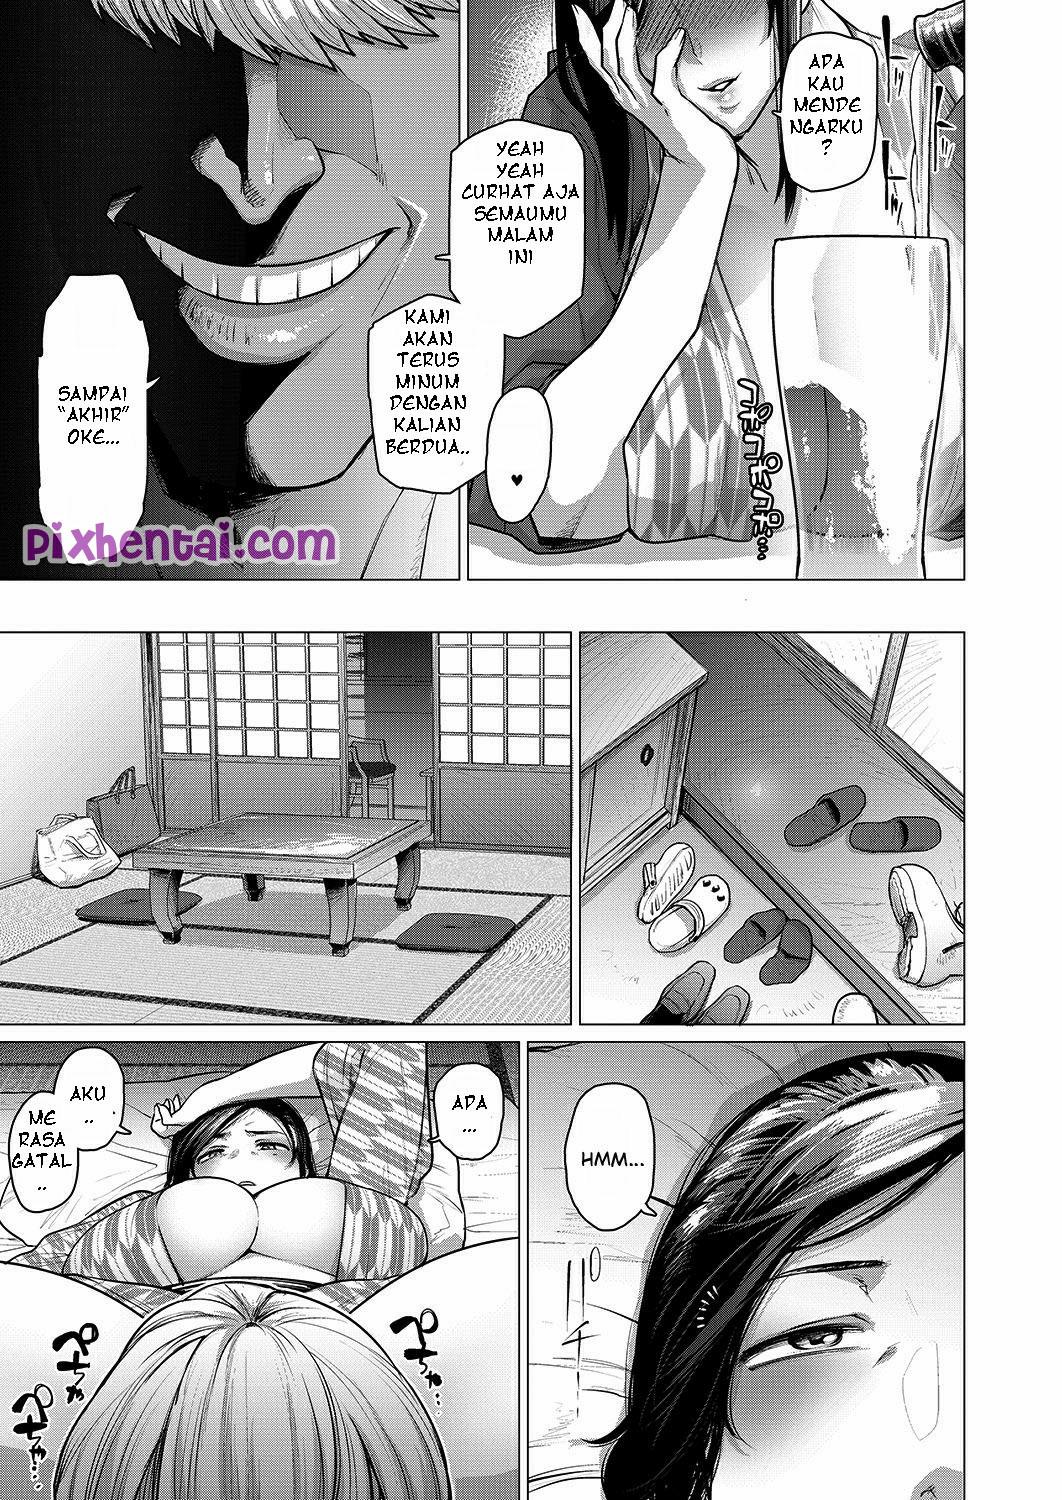 Komik hentai xxx manga sex bokep gangbang 2 ibu rumah tangga semok sampai lemas 07